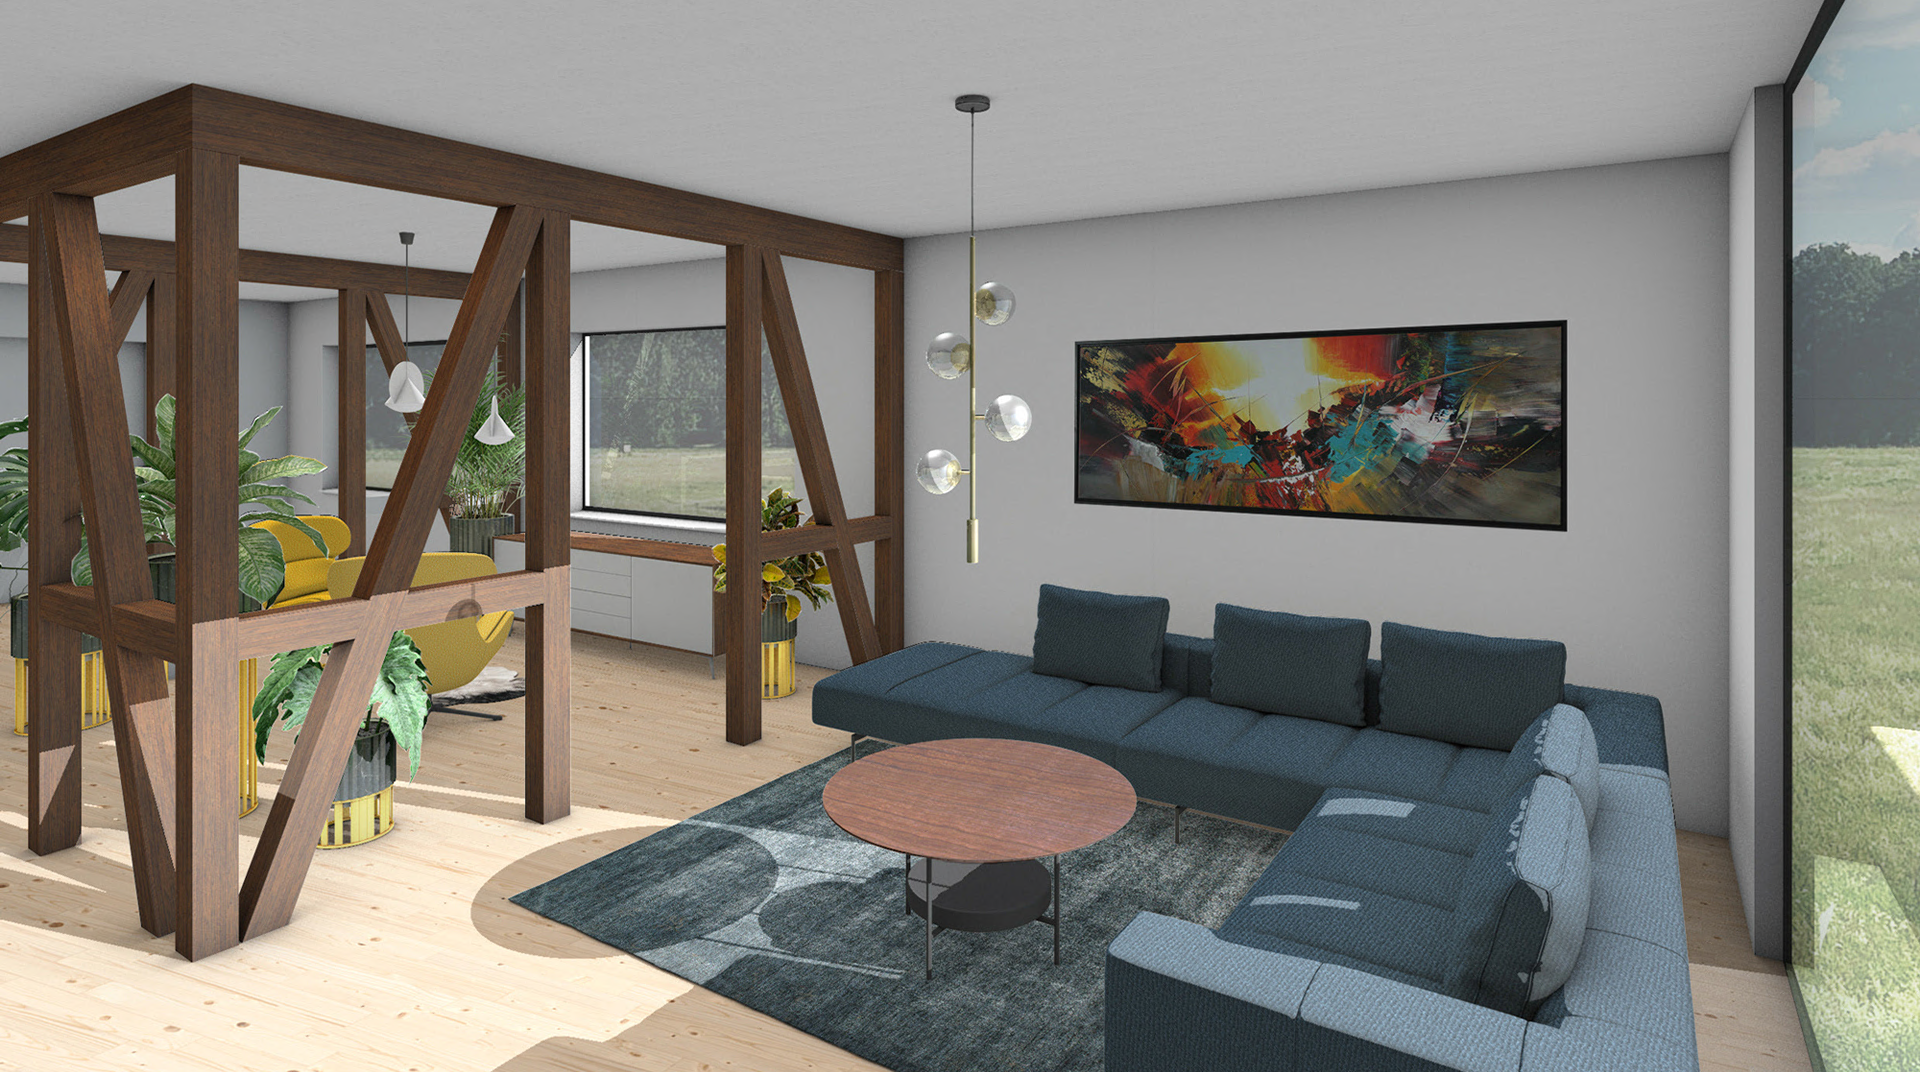 Wedox Objektreferenz Wohnzimmer in 3D Simulation